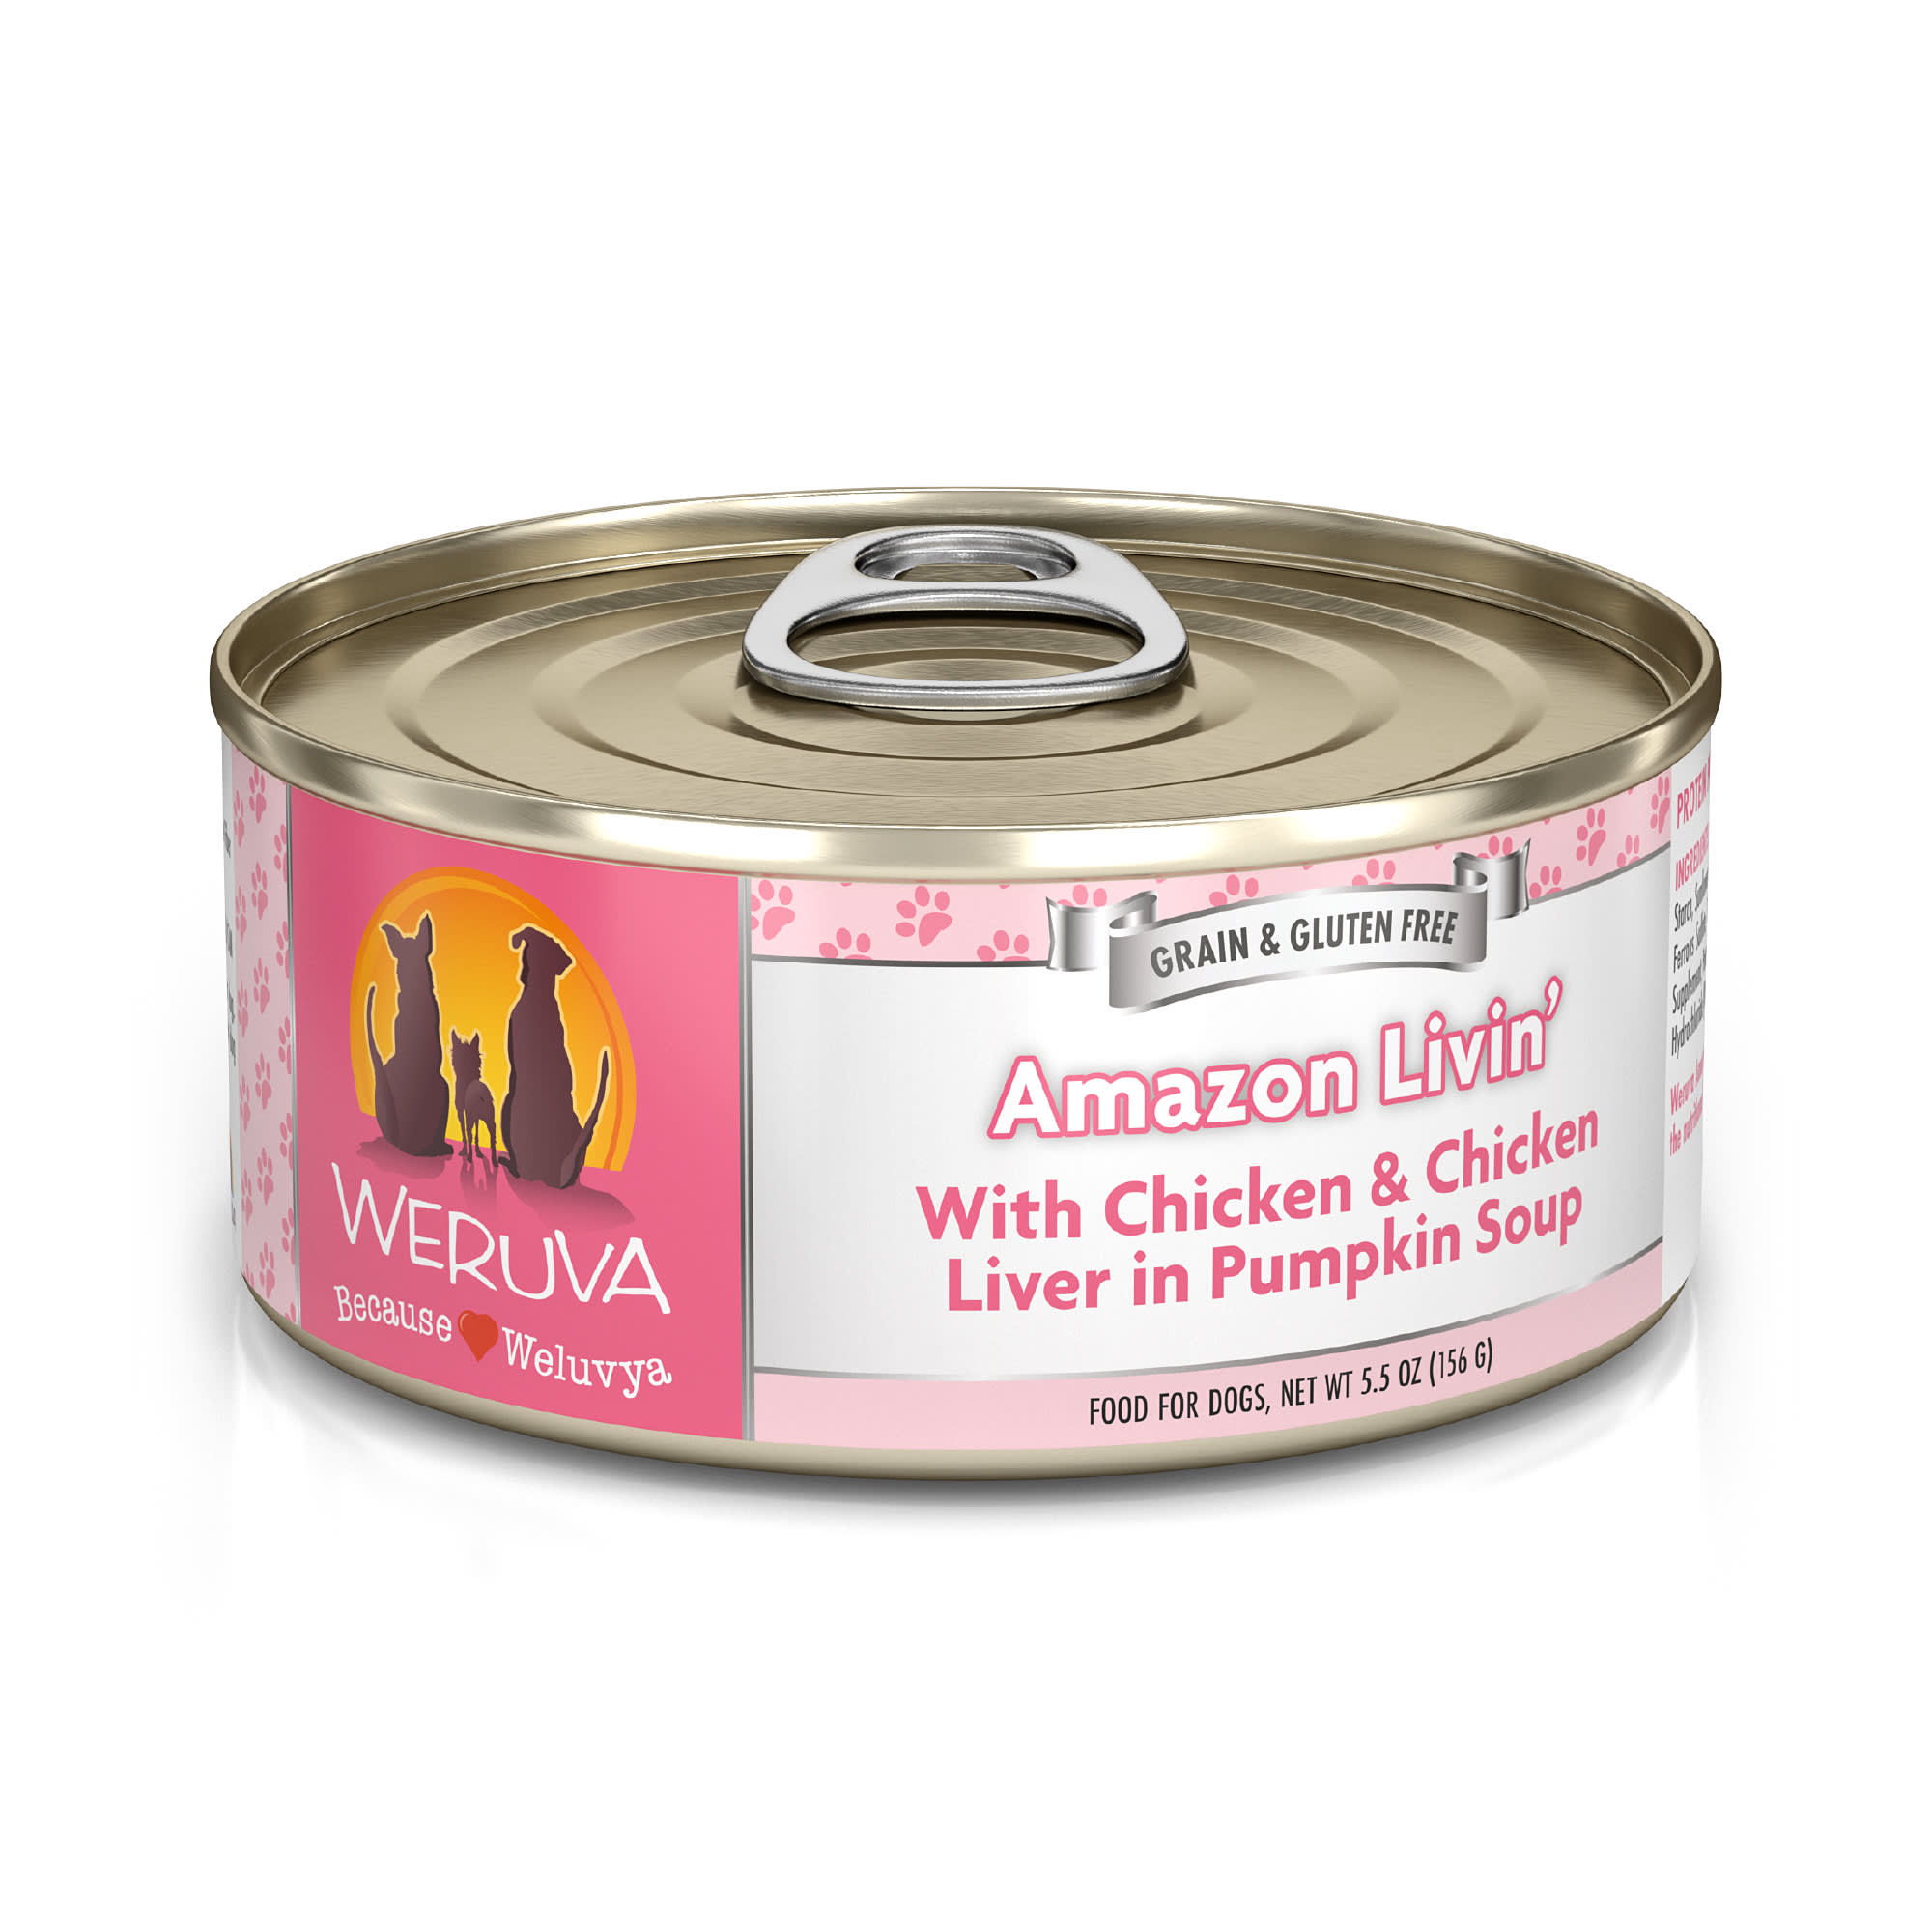 Weruva Classics Amazon Liver with Chicken & Chicken Liver in Pumpkin Soup Wet Dog Food, 5.5 oz., Case of 24, 24 X 5.5 OZ